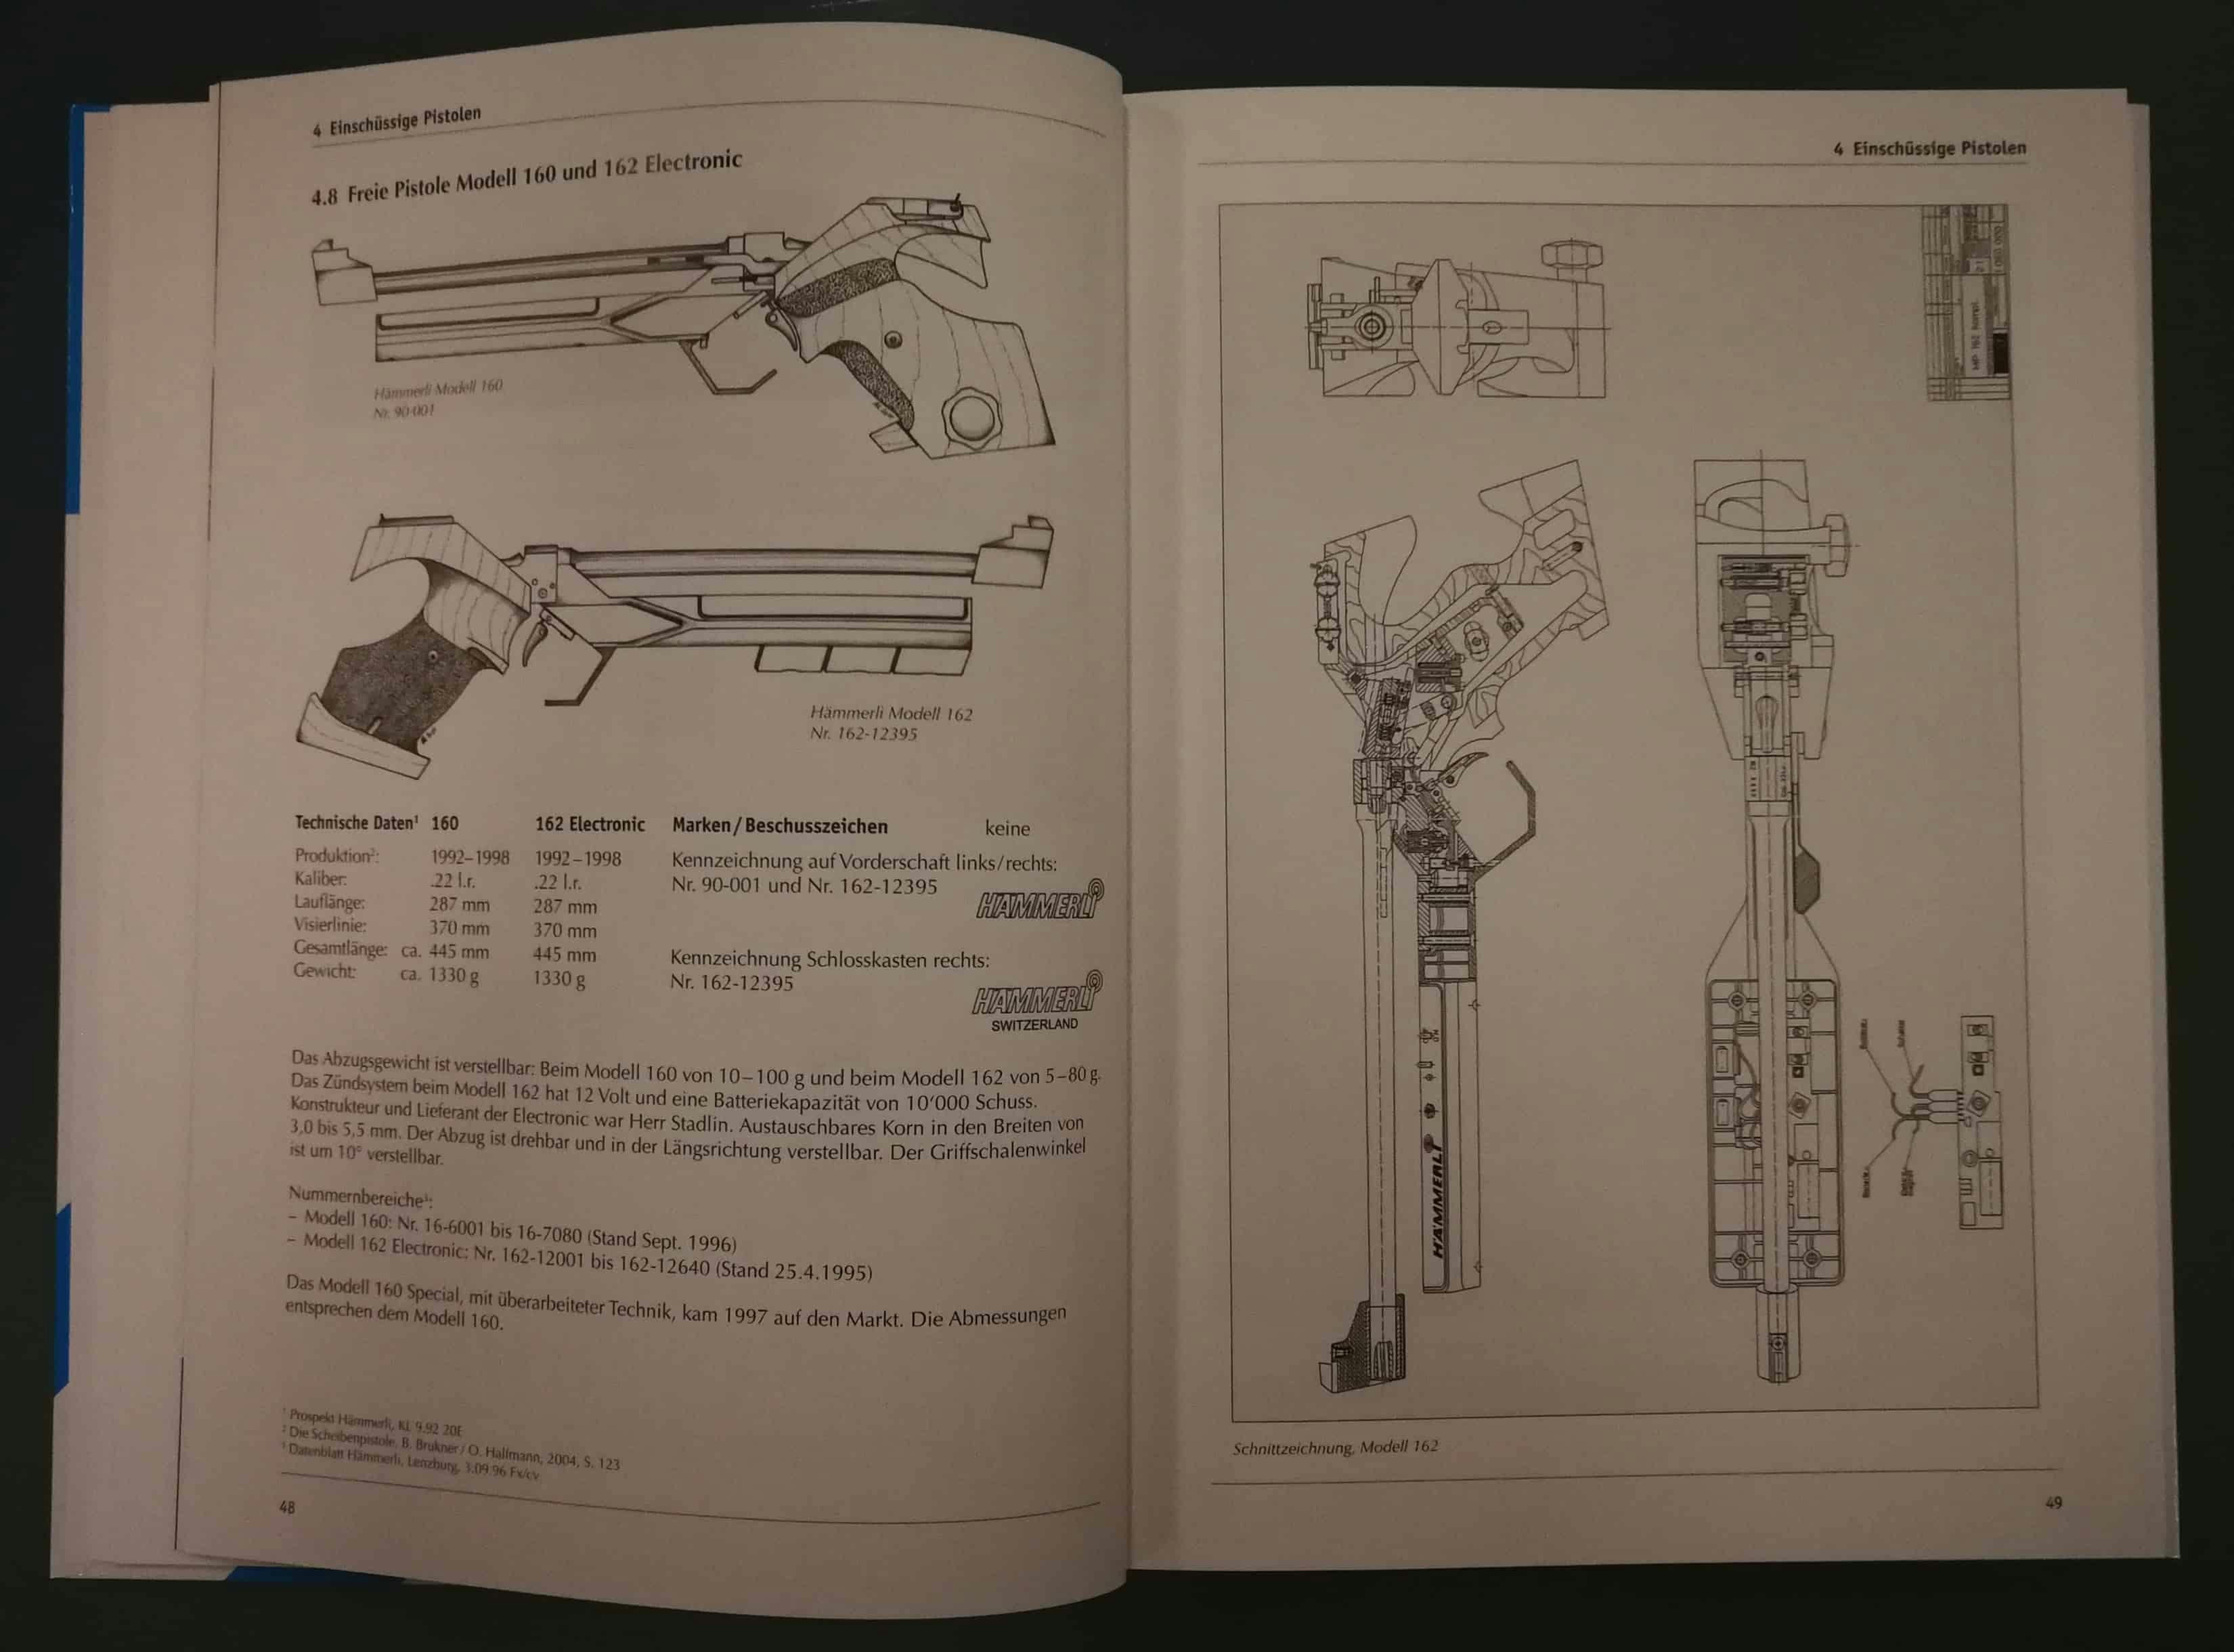 Links die Freie Pistole 160 und 162 mit elektronischem Zündsystem, rechts davon die Schnittzeichnung.